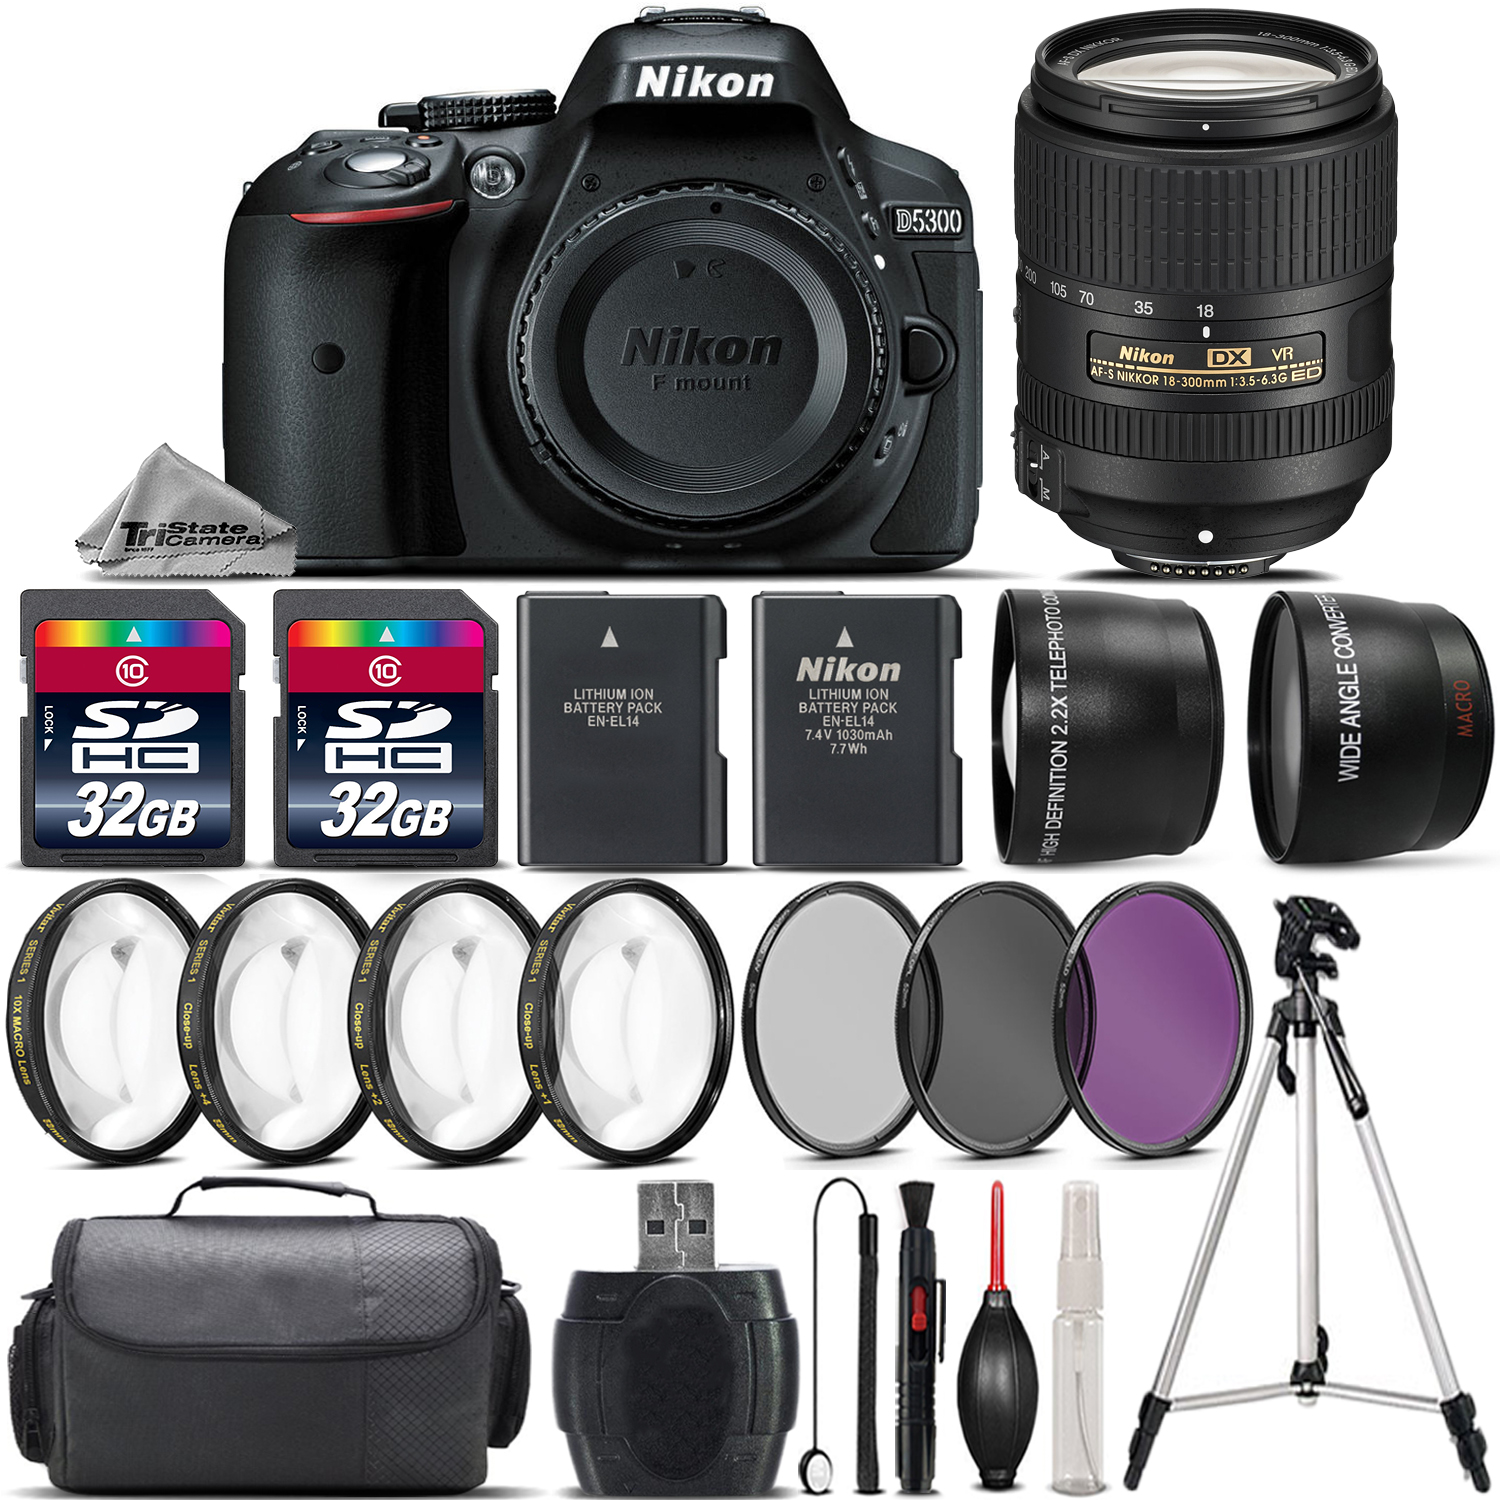 D5300 DSLR Camera with Nikon 18-300mm VR Lens + 4PC Macro Kit - 64GB Kit *FREE SHIPPING*